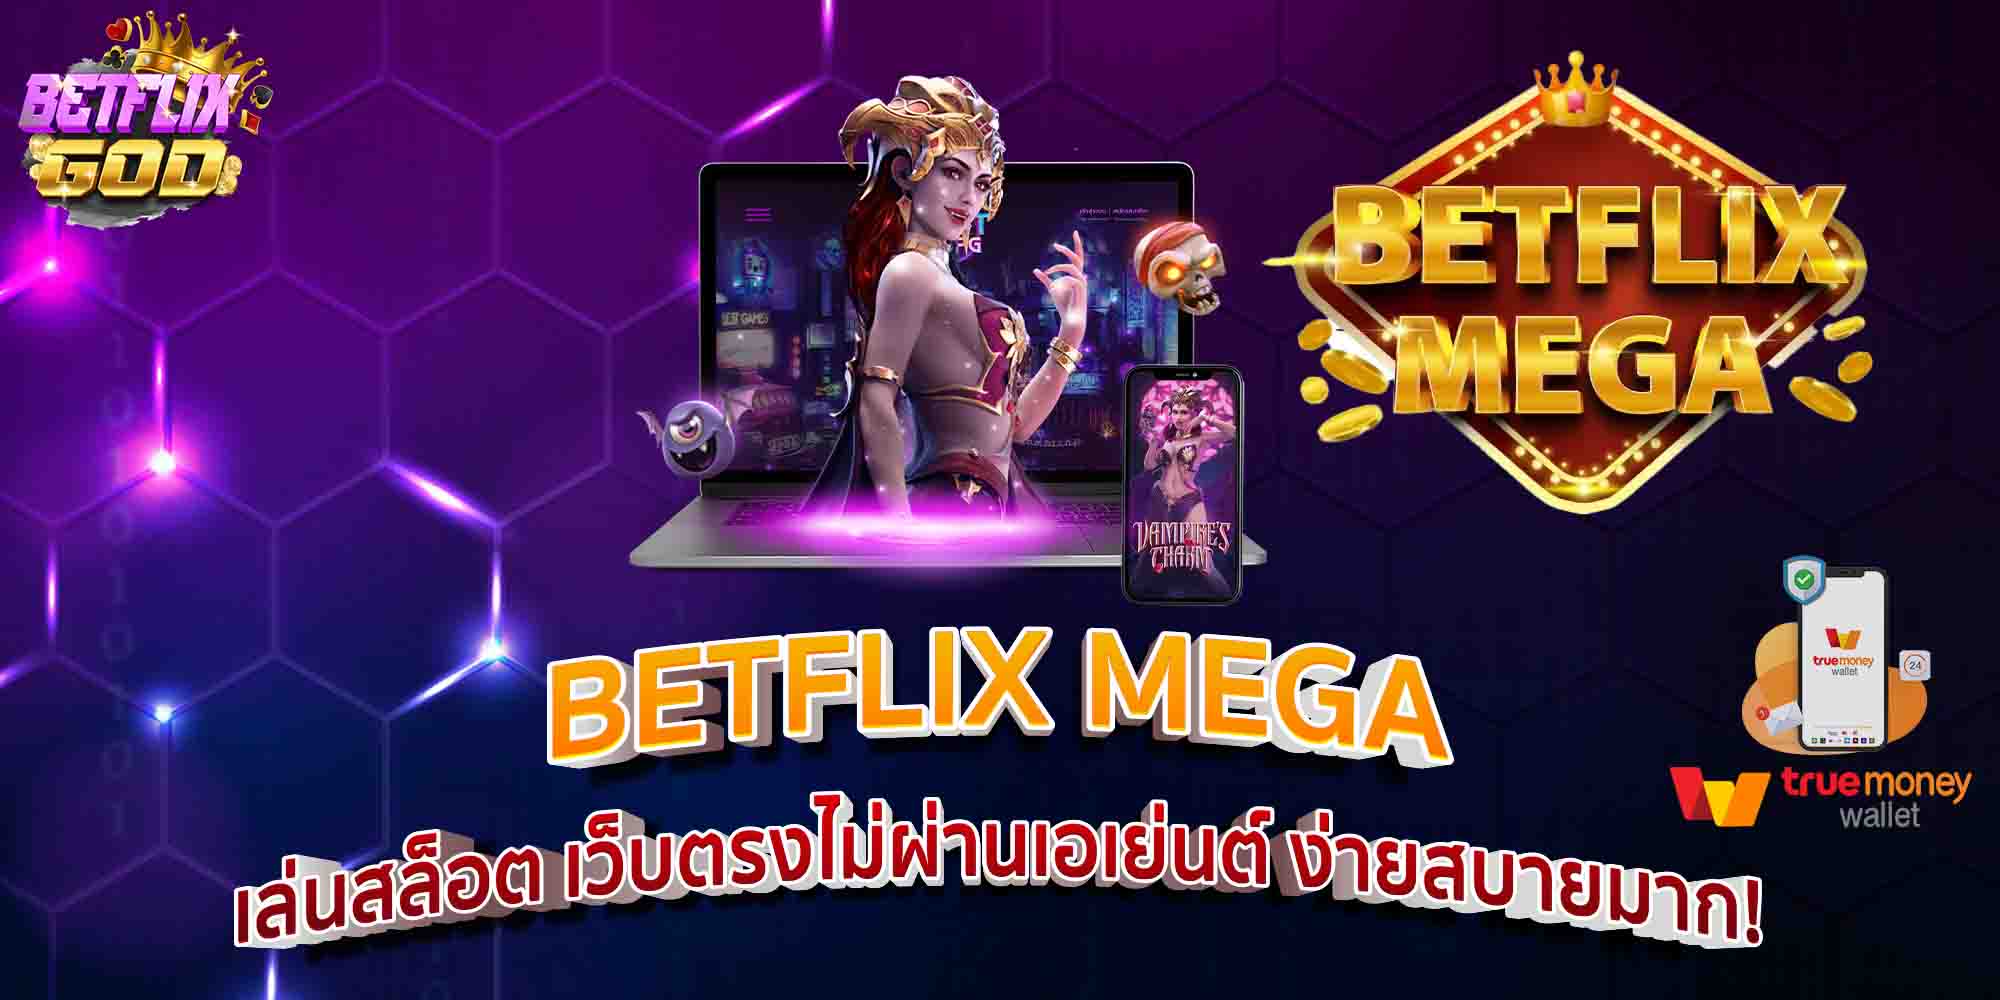 BETFLIX MEGA เล่นสล็อต เว็บตรงไม่ผ่านเอเย่นต์ ง่ายสบายมาก!